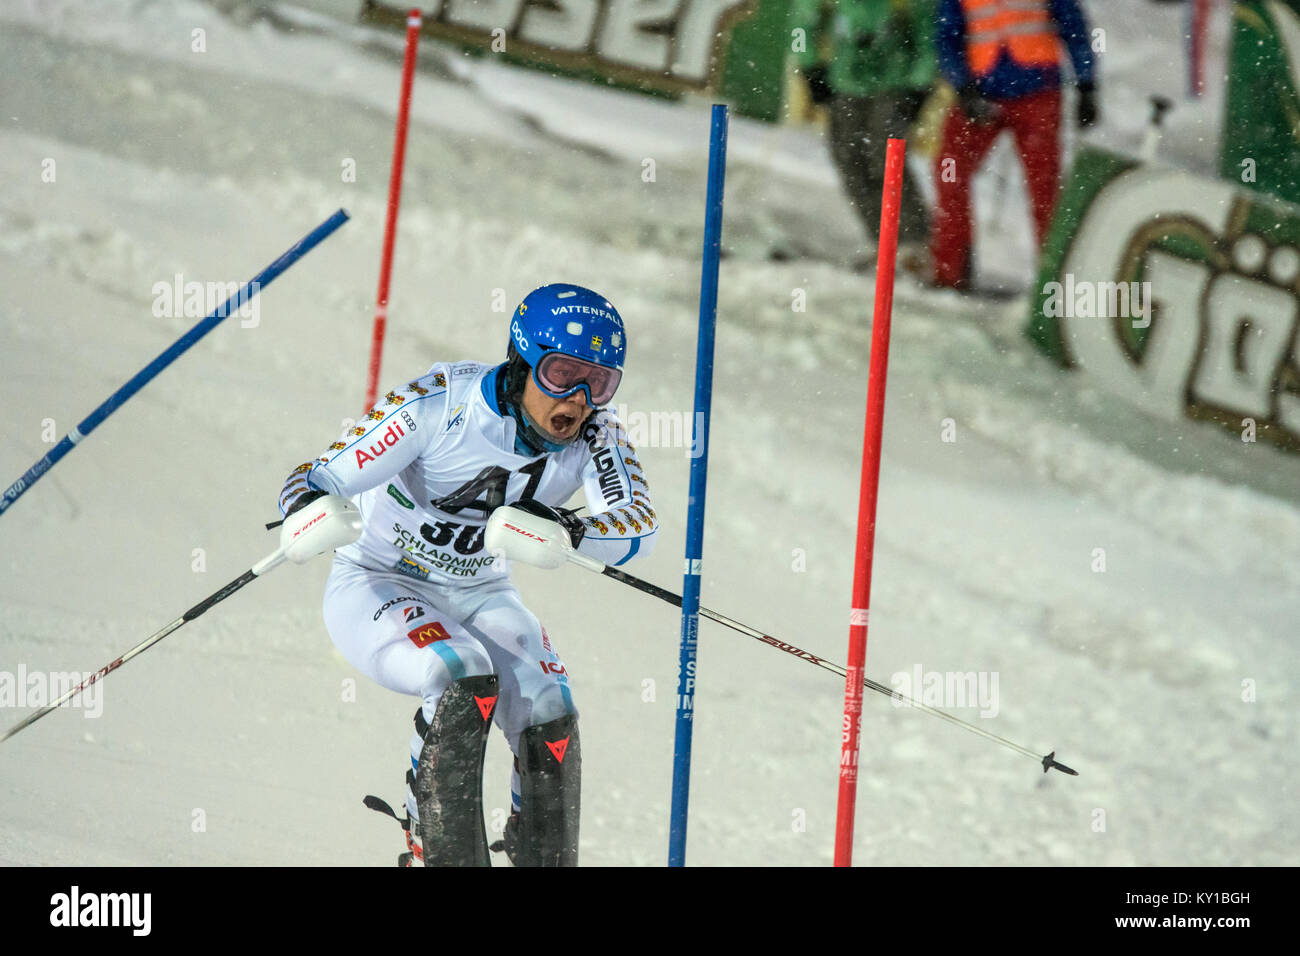 Calle Lindh (30) aus Schweden Rennen auf der Planai Kurs während seinem ersten Lauf der Männer Slalom am AUDI FIS Weltcup in Schladming. Photo Credit: Christoph Oberschneider. Stockfoto